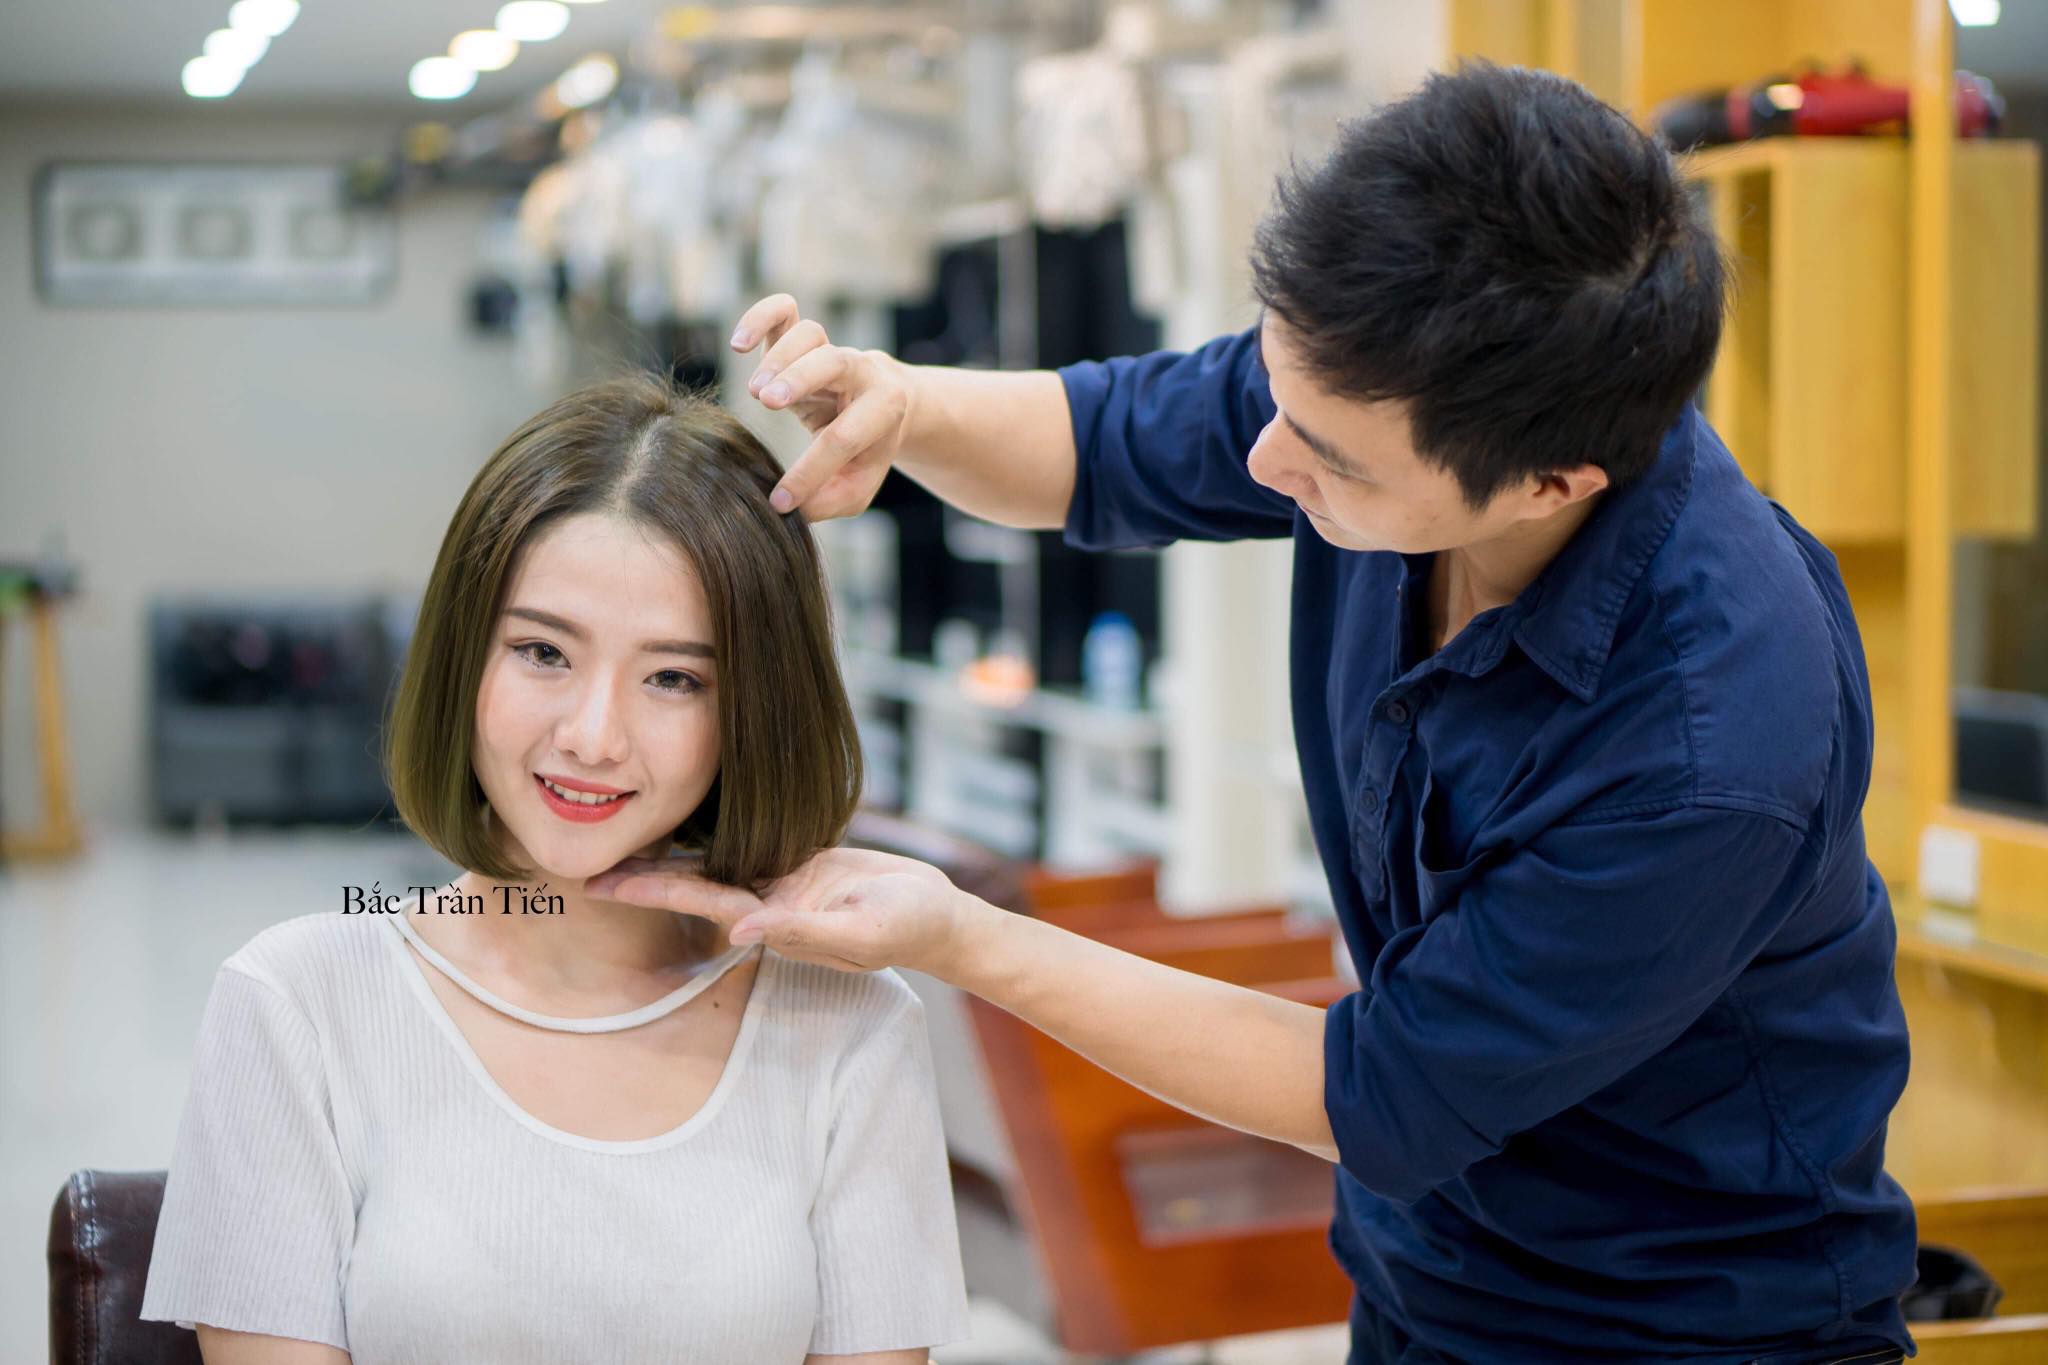 Bắc Trần Tiến Hair Salon – Tiệm Uốn Tóc Đẹp Nổi Tiếng Ở Sài Gòn